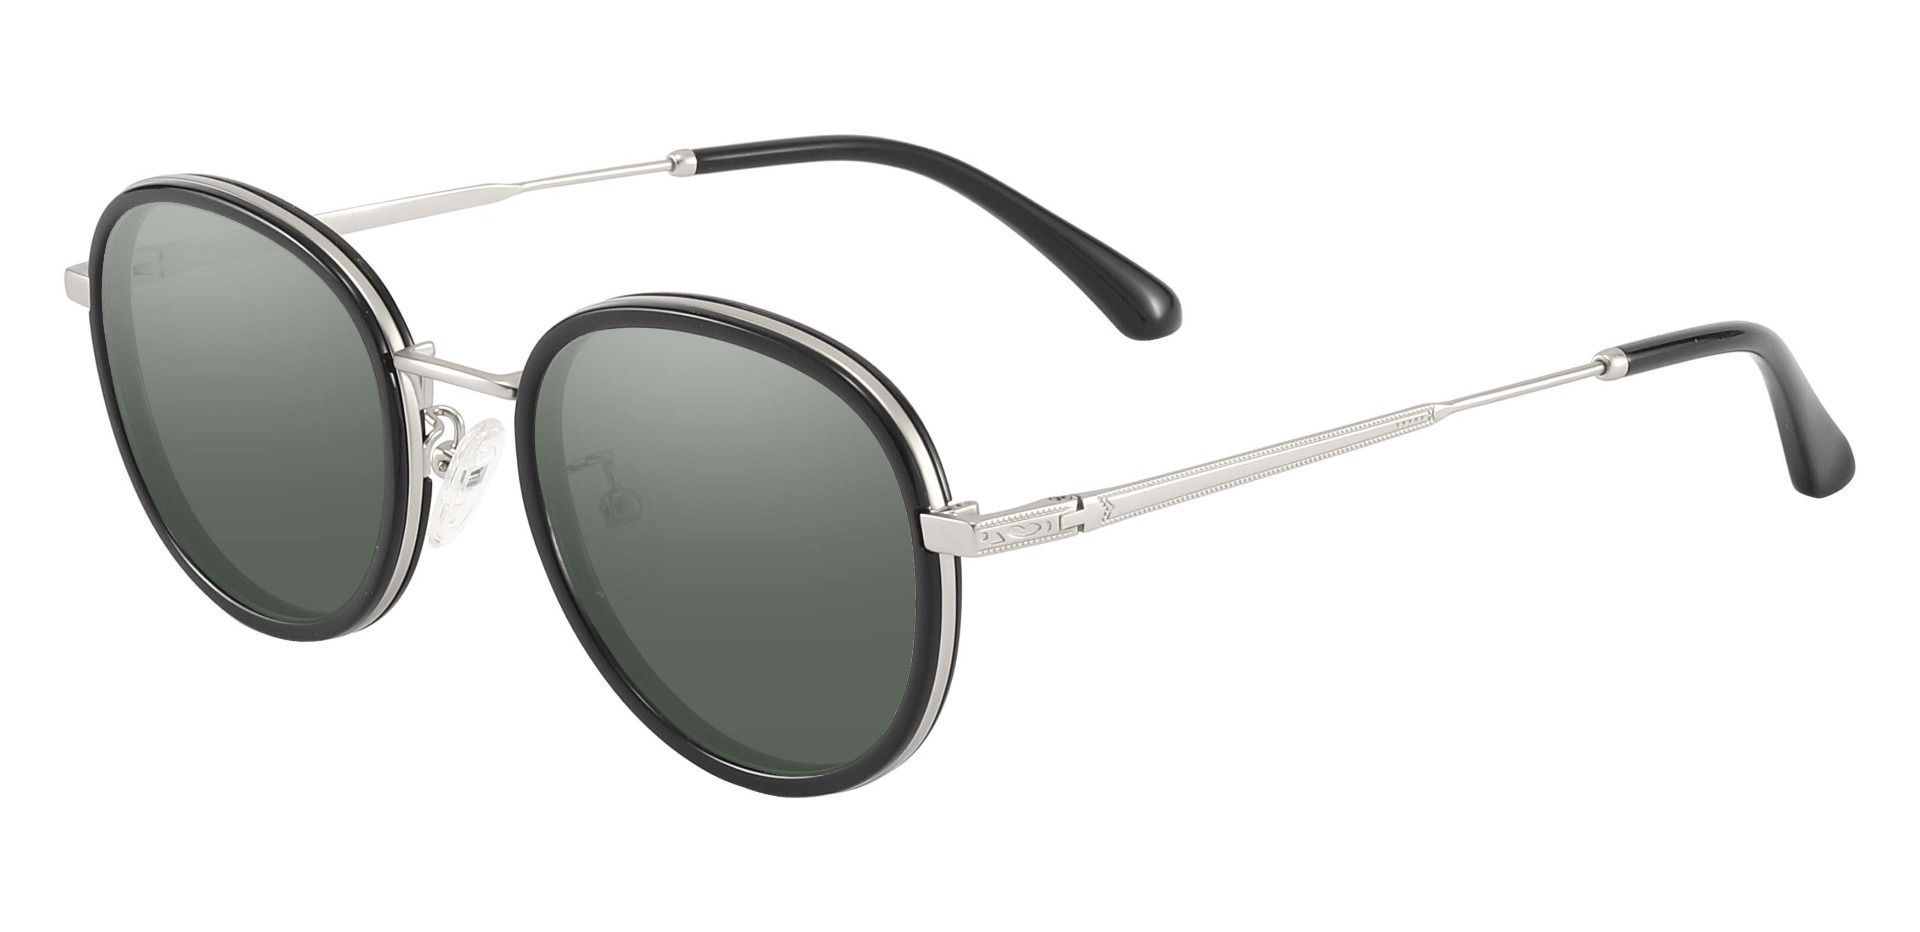 Edmore Oval Progressive Sunglasses - Black Frame With Green Lenses